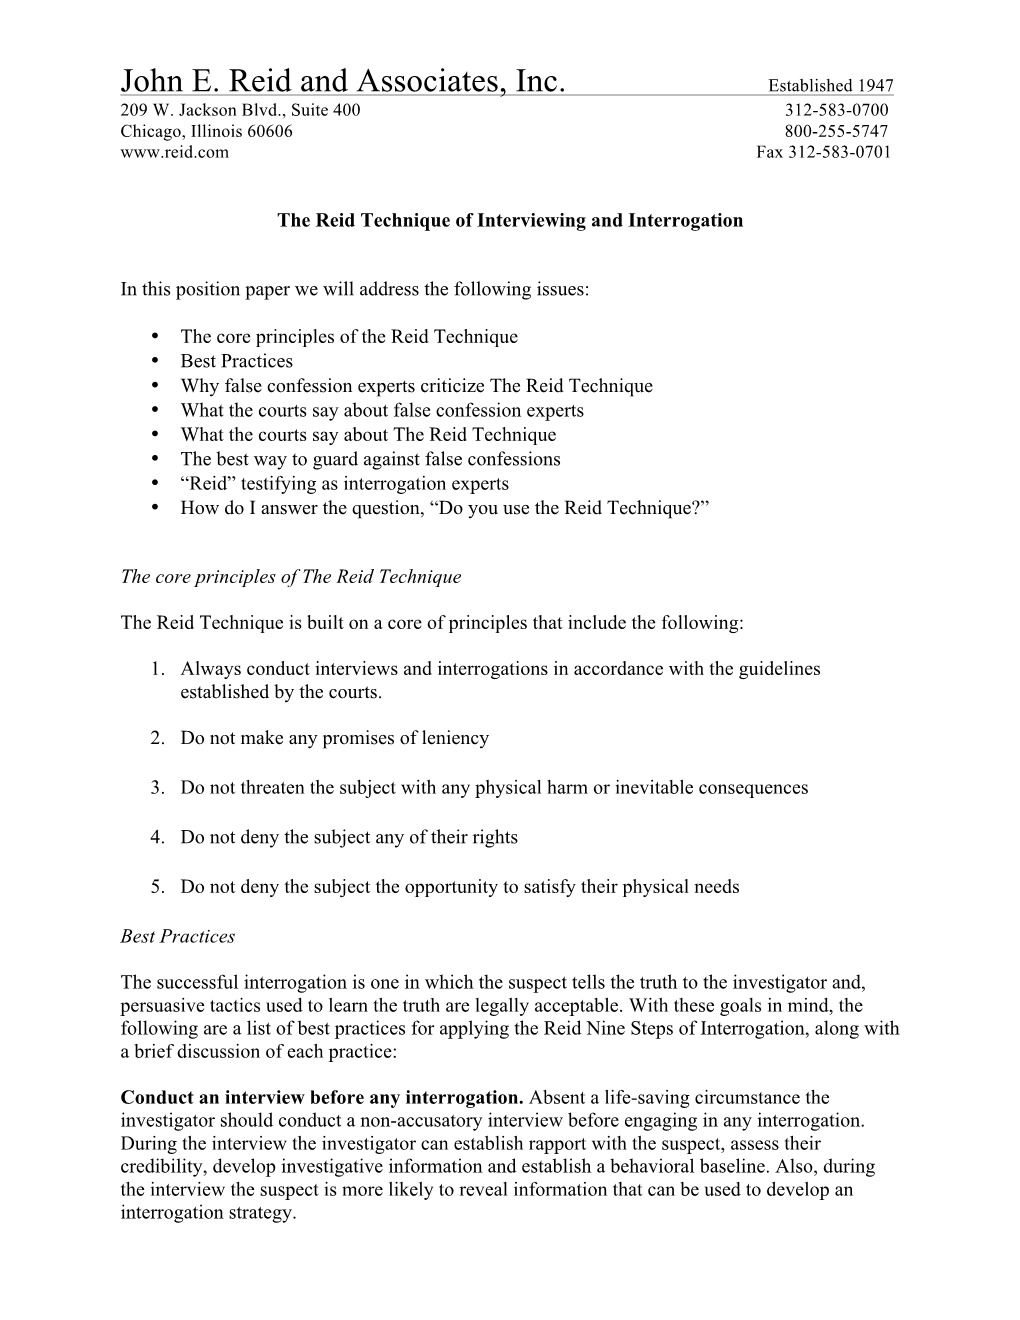 The Reid Technique Position Paper March 16